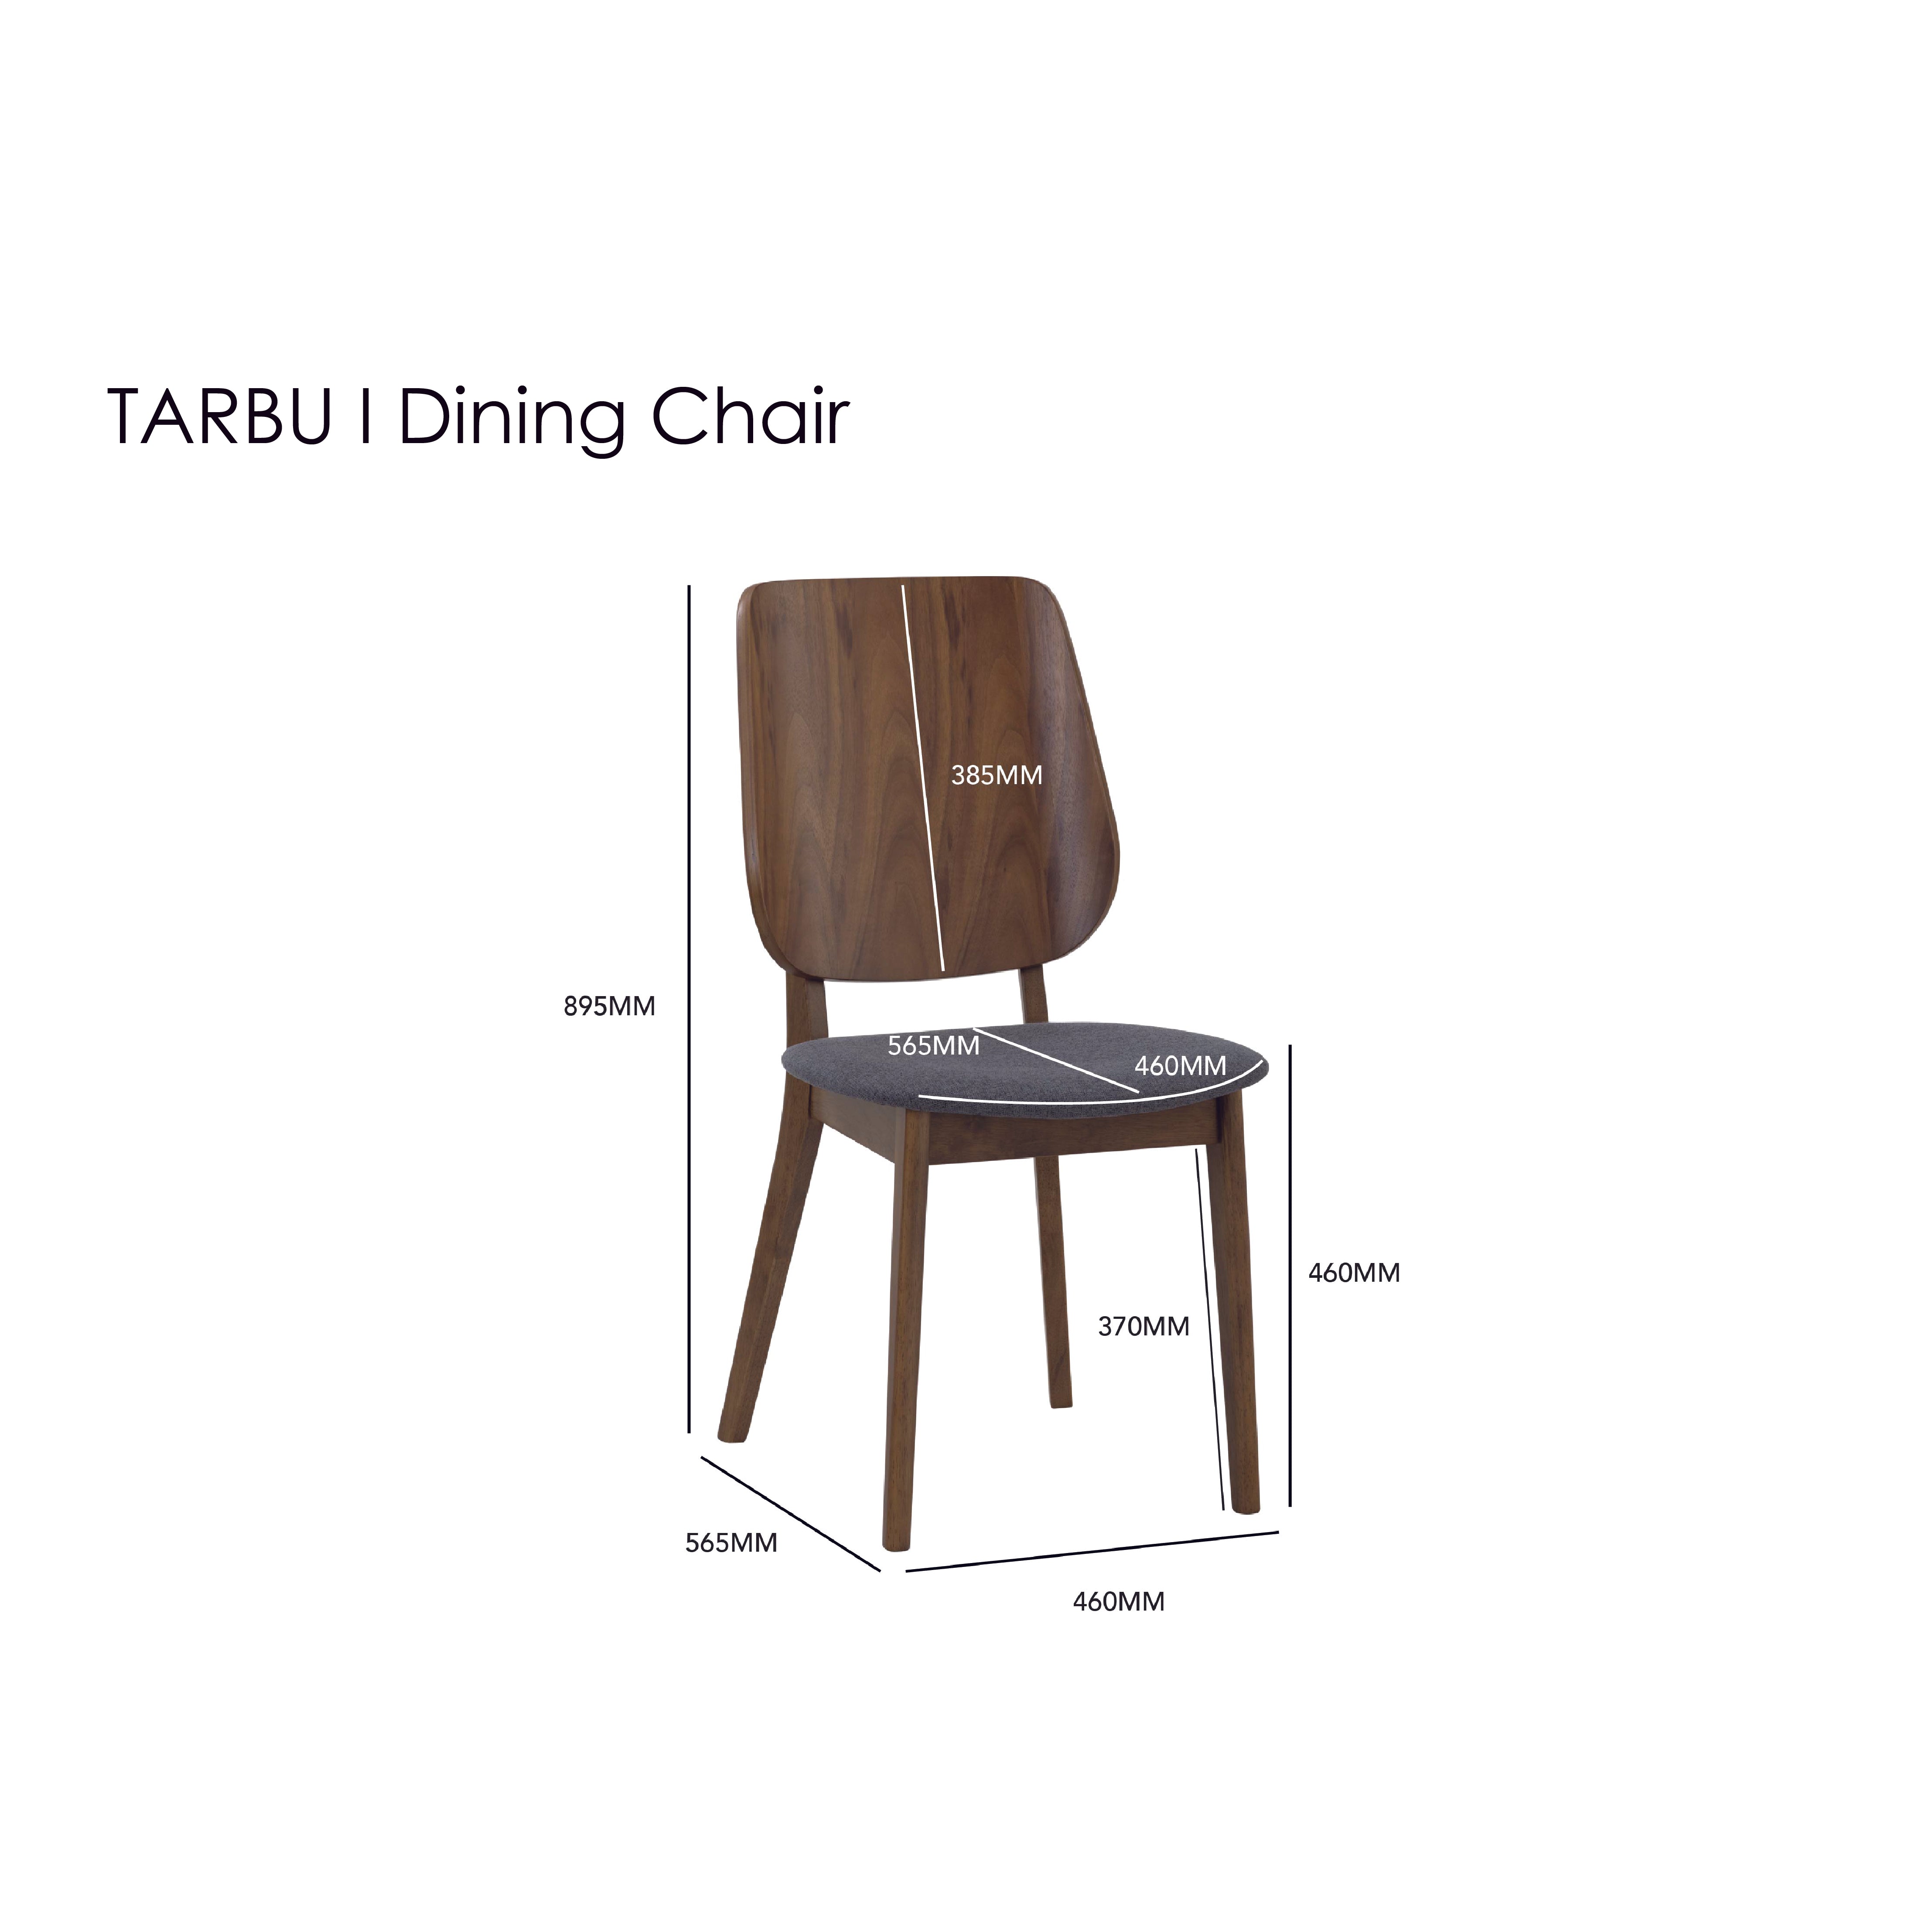 TARBU I Dining Chair (2 pcs.)